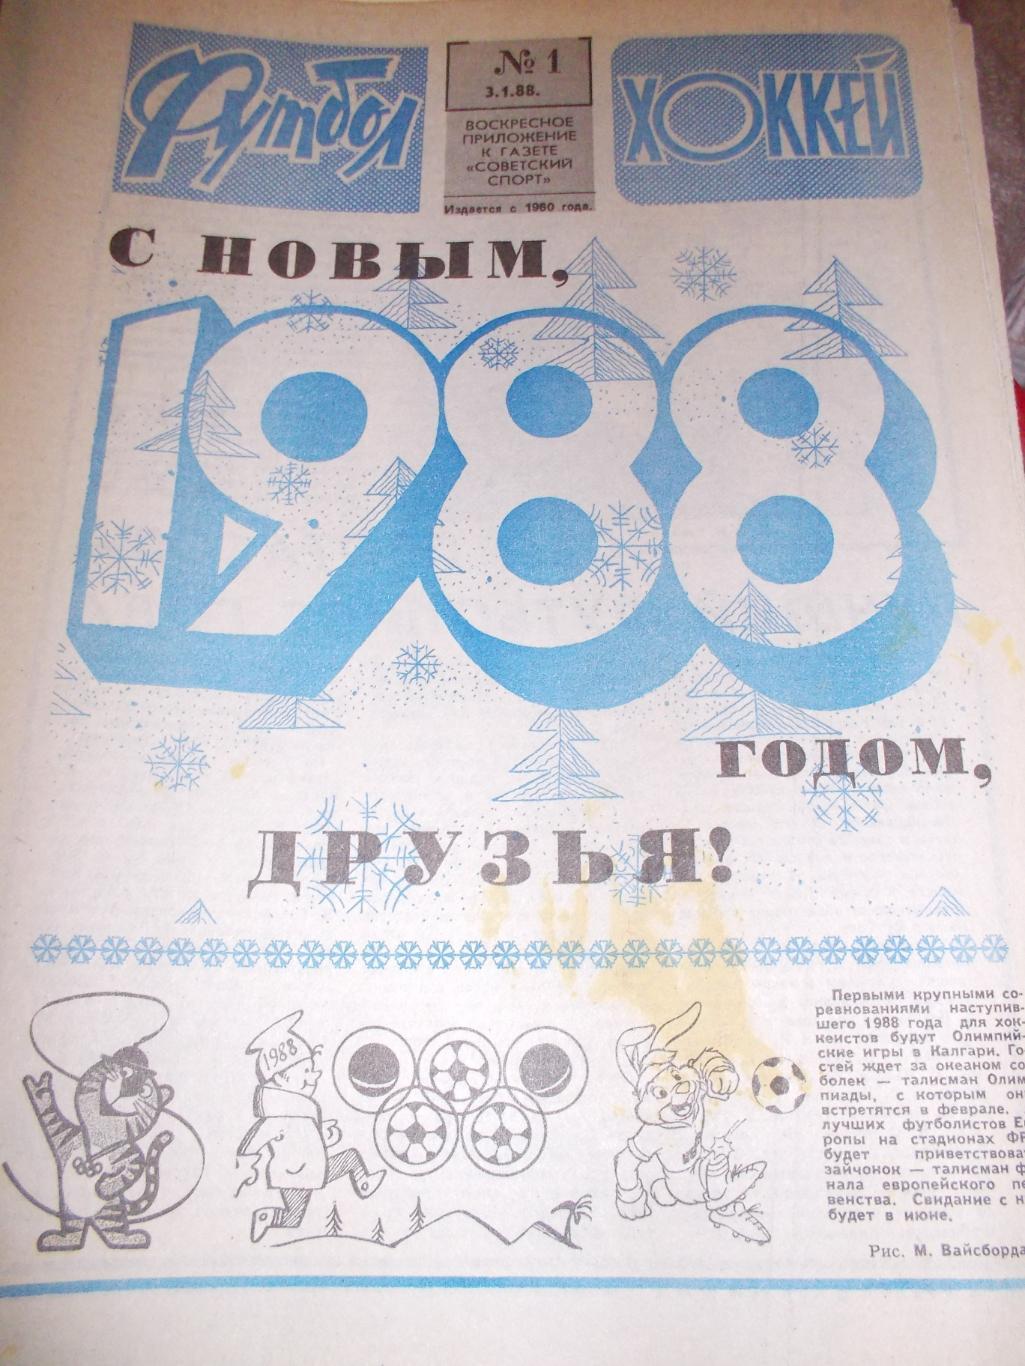 Еженедельник Футбол-Хоккей 1988, комплект+БИЛЕТ участника чемпионата СССР-88.